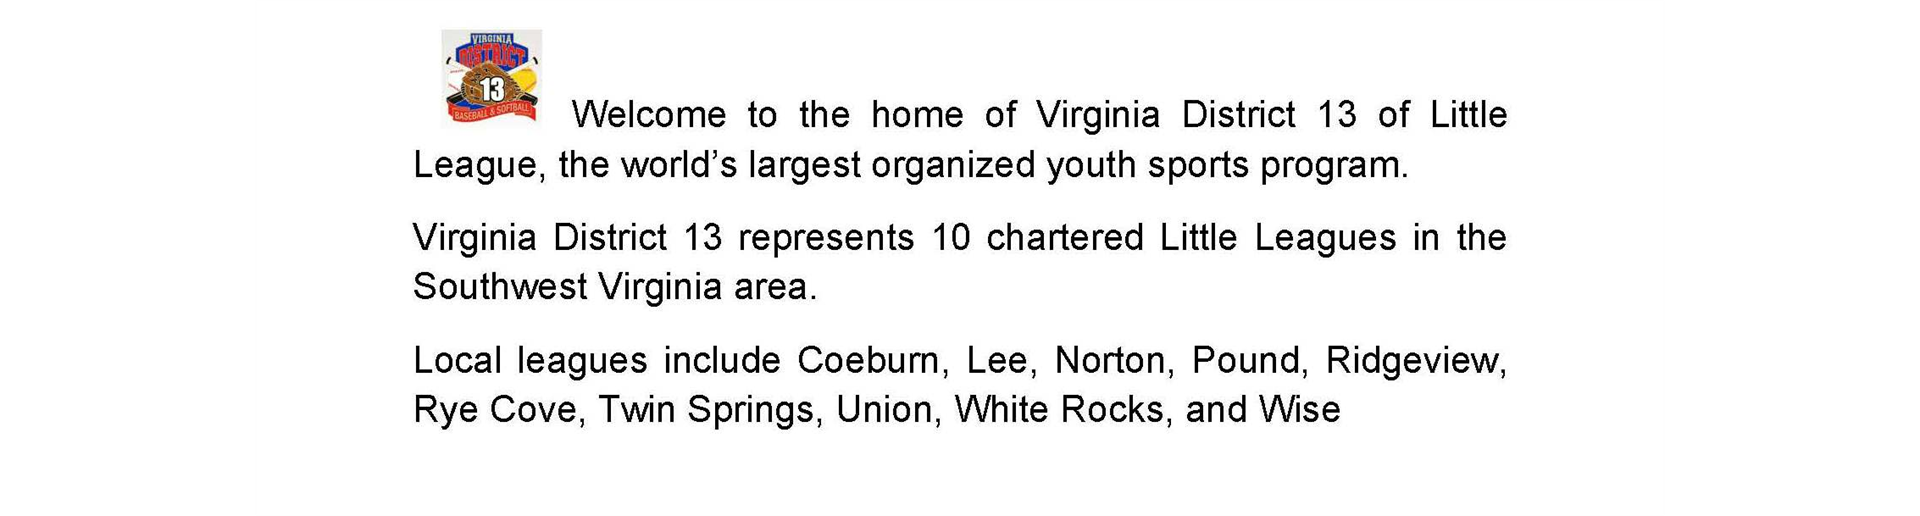 Virginia District 13 Little League